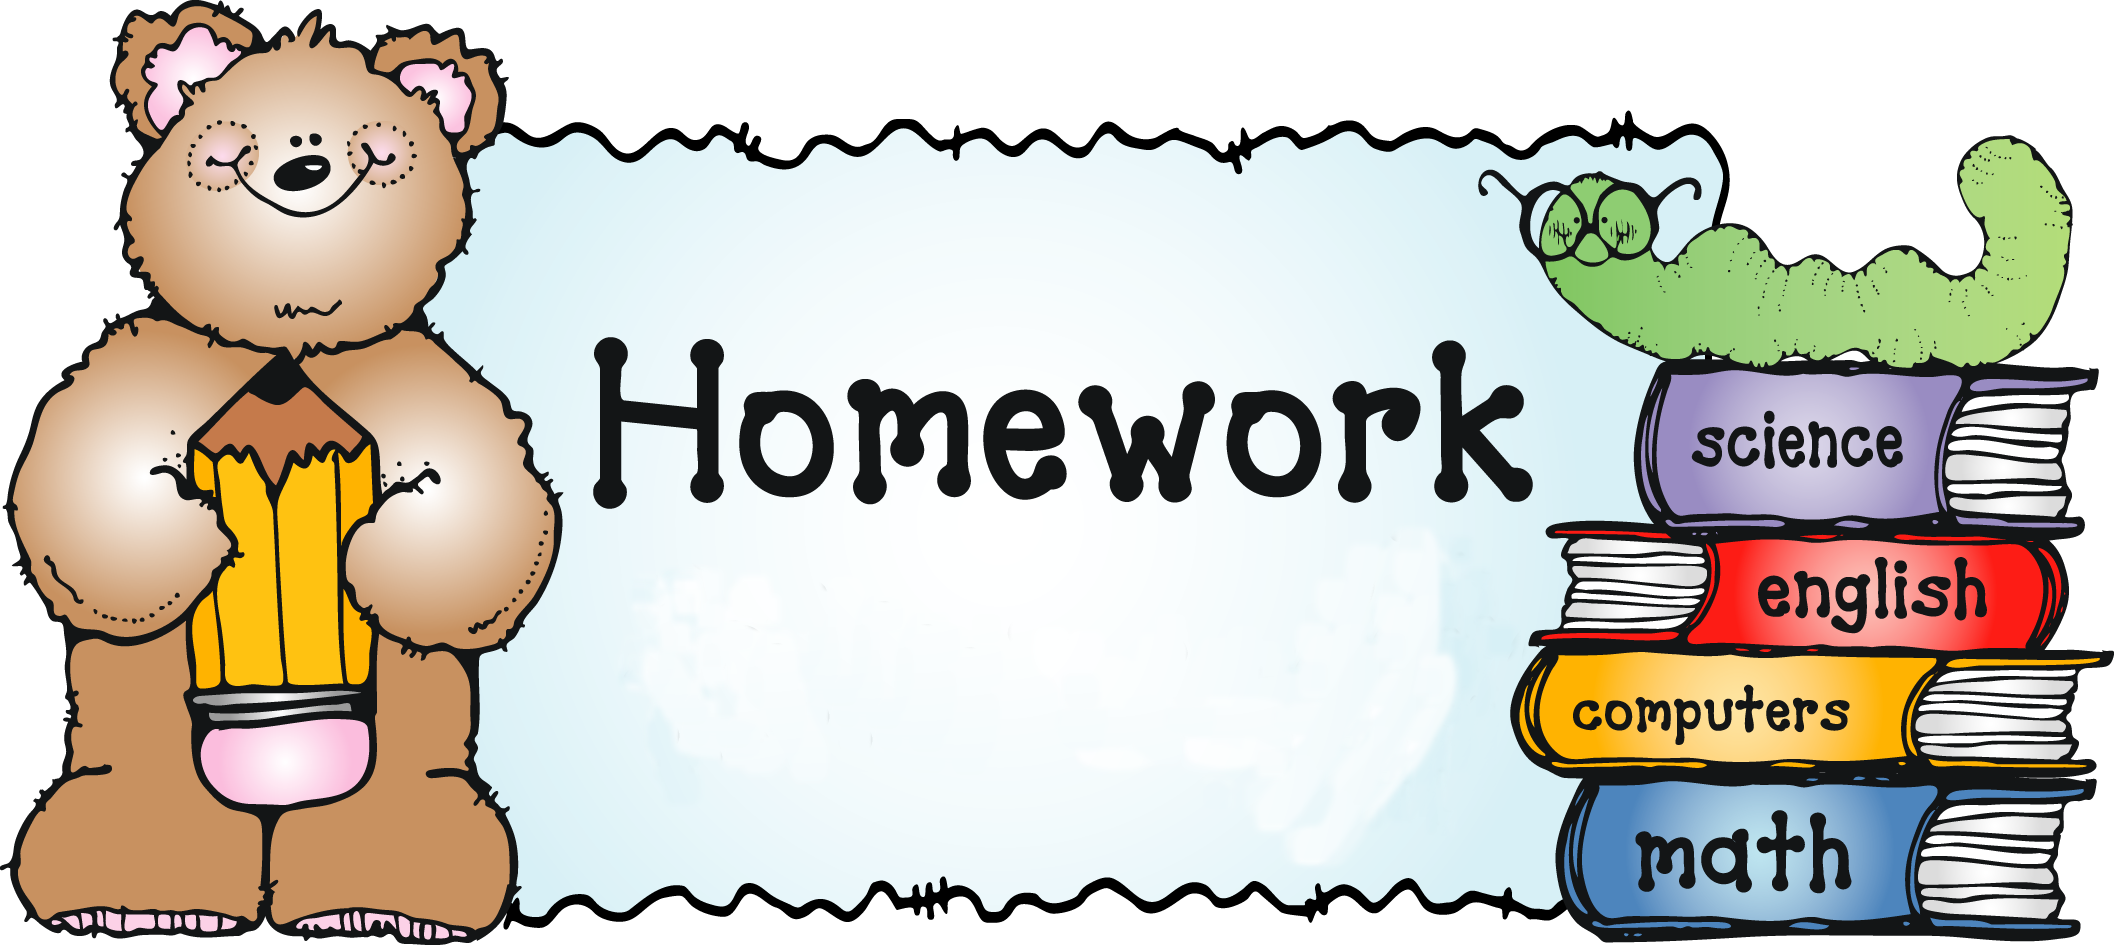 Homework. Домашнее задание на английском. Homework картинка. Рисунки для презентации по английскому языку.